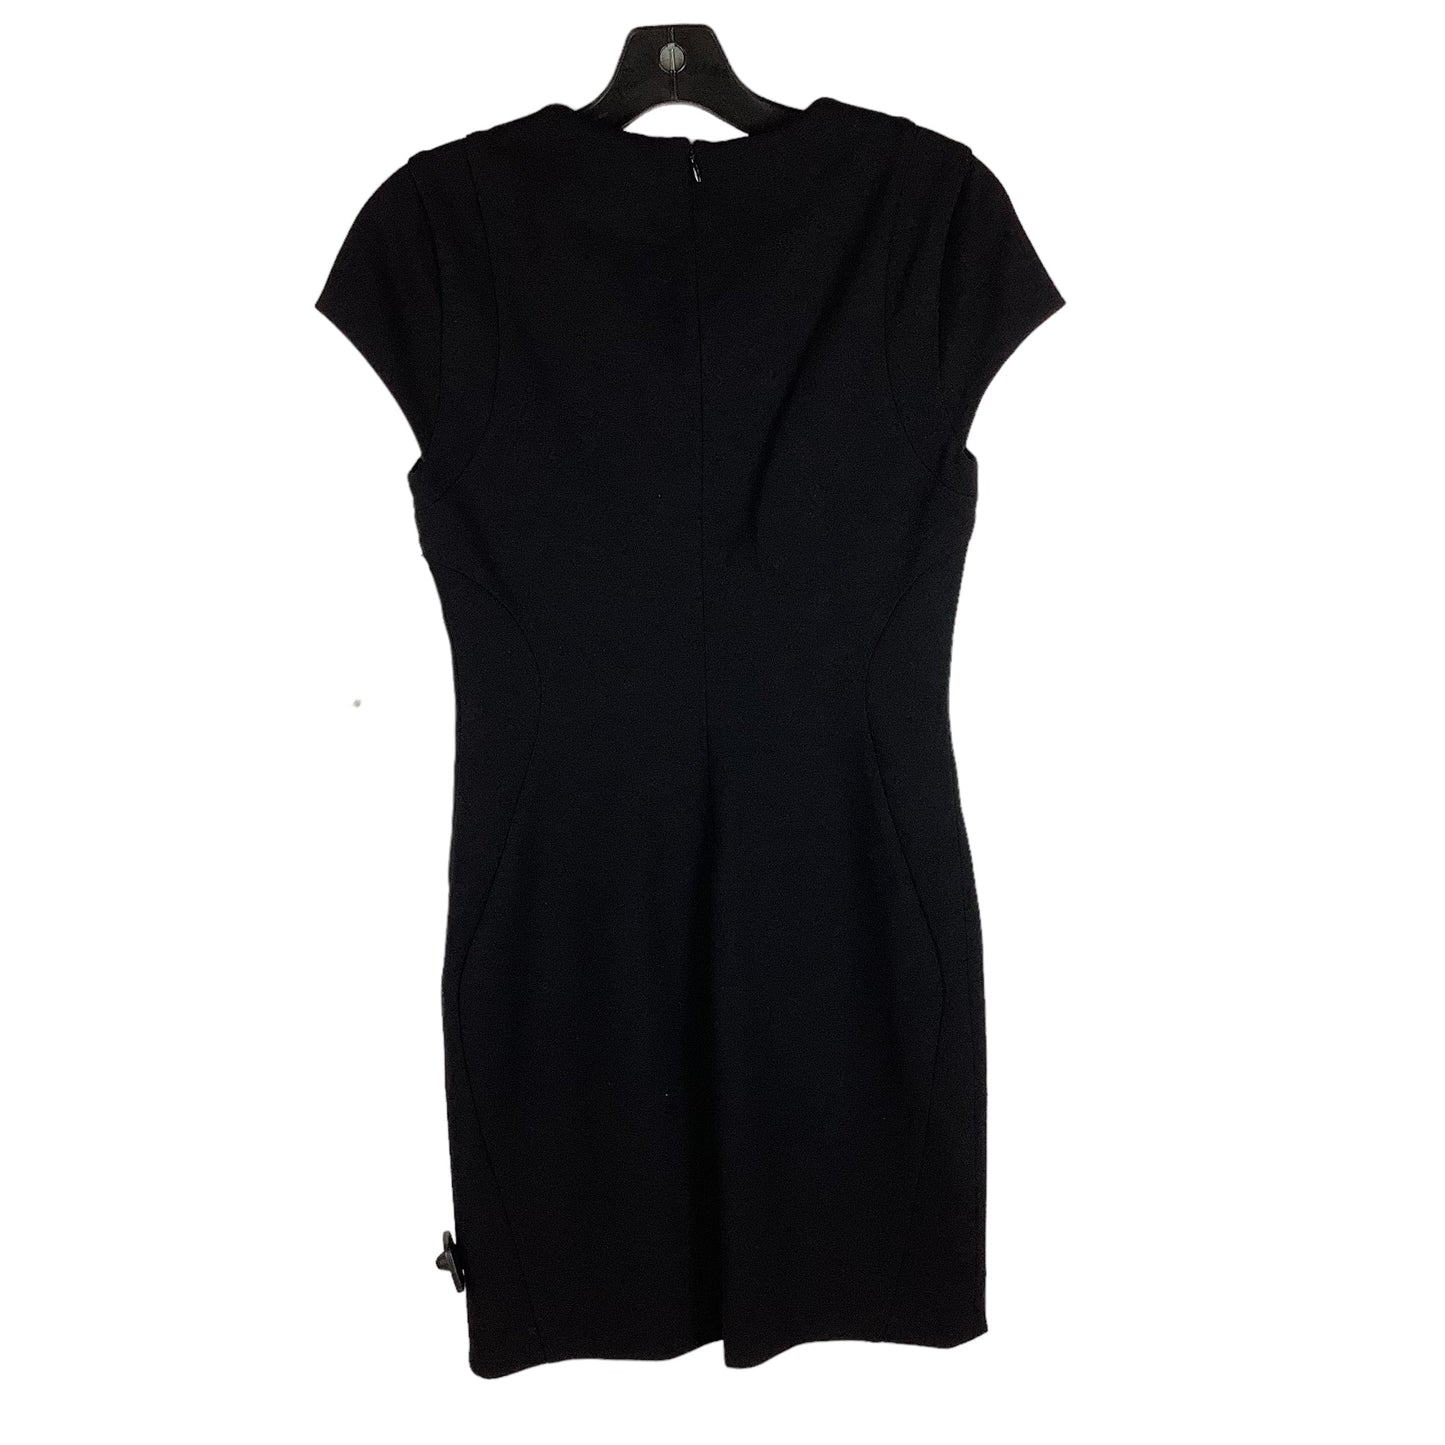 Black Dress Designer Diane Von Furstenberg, Size 4